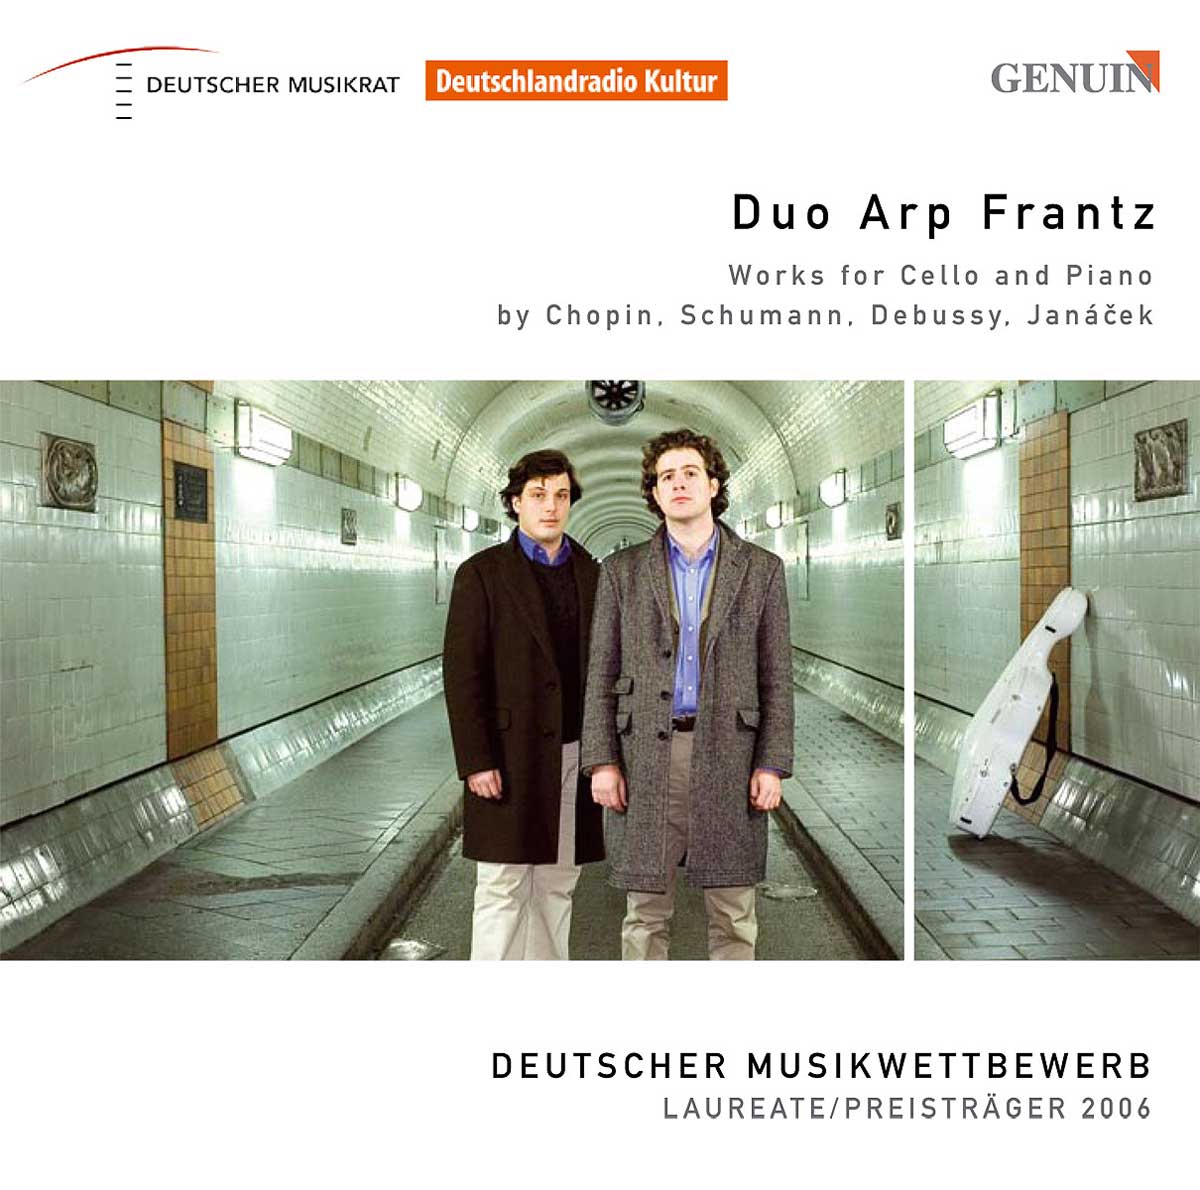 CD album cover 'Duo Arp Frantz' (GEN 87093) with Julian Arp, Caspar Frantz